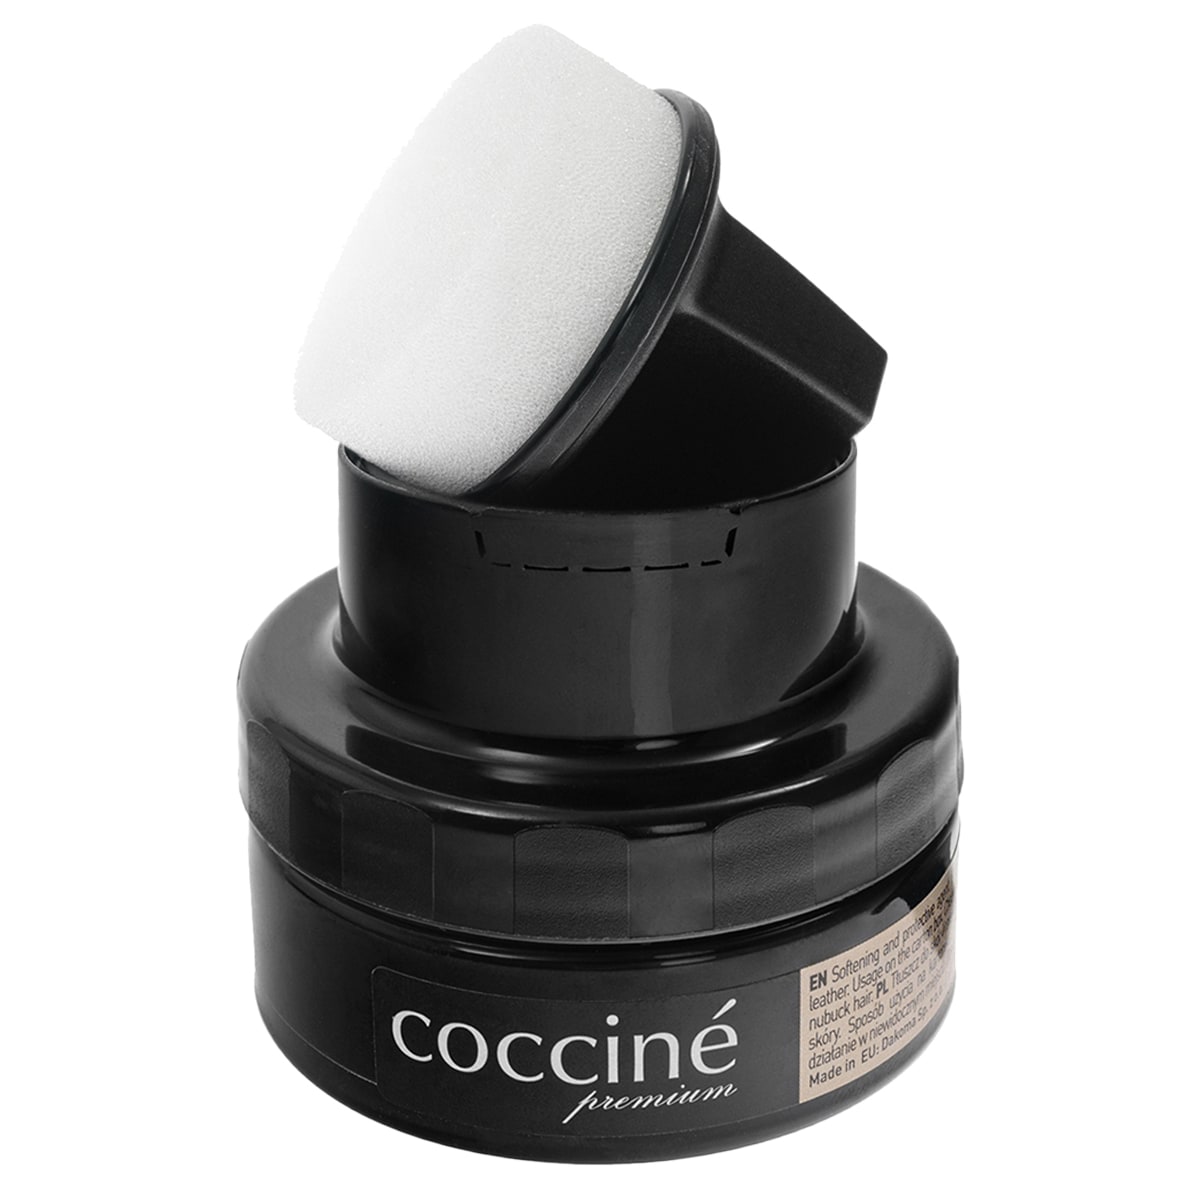 Tłuszcz Coccine do skór licowych 50 ml - brązowy